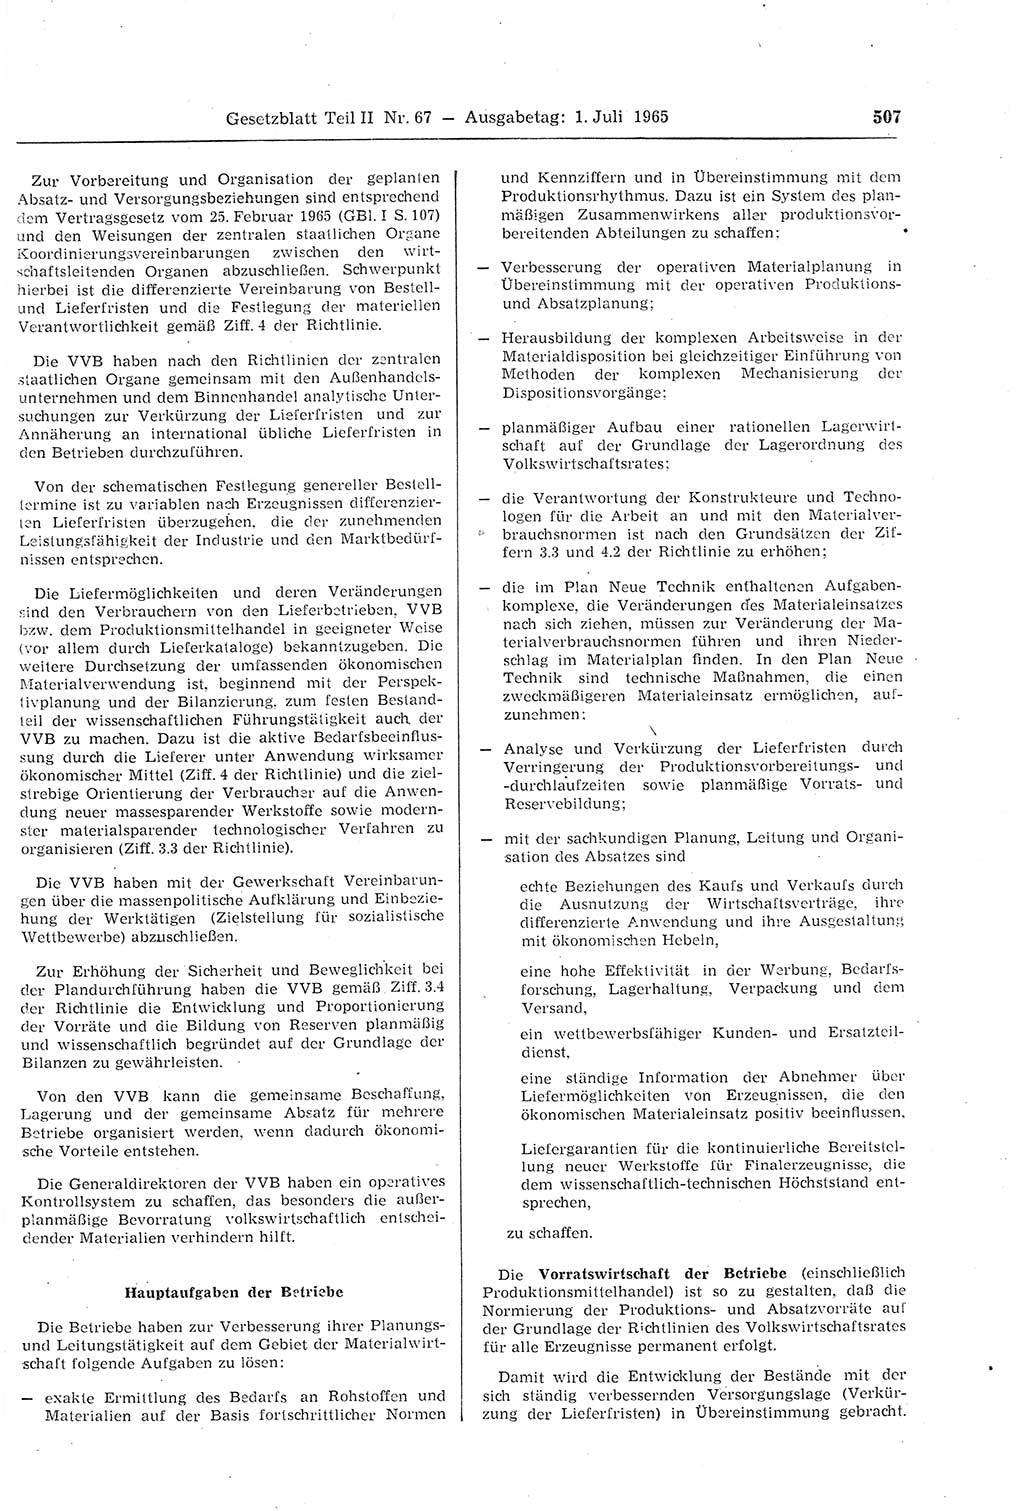 Gesetzblatt (GBl.) der Deutschen Demokratischen Republik (DDR) Teil ⅠⅠ 1965, Seite 507 (GBl. DDR ⅠⅠ 1965, S. 507)